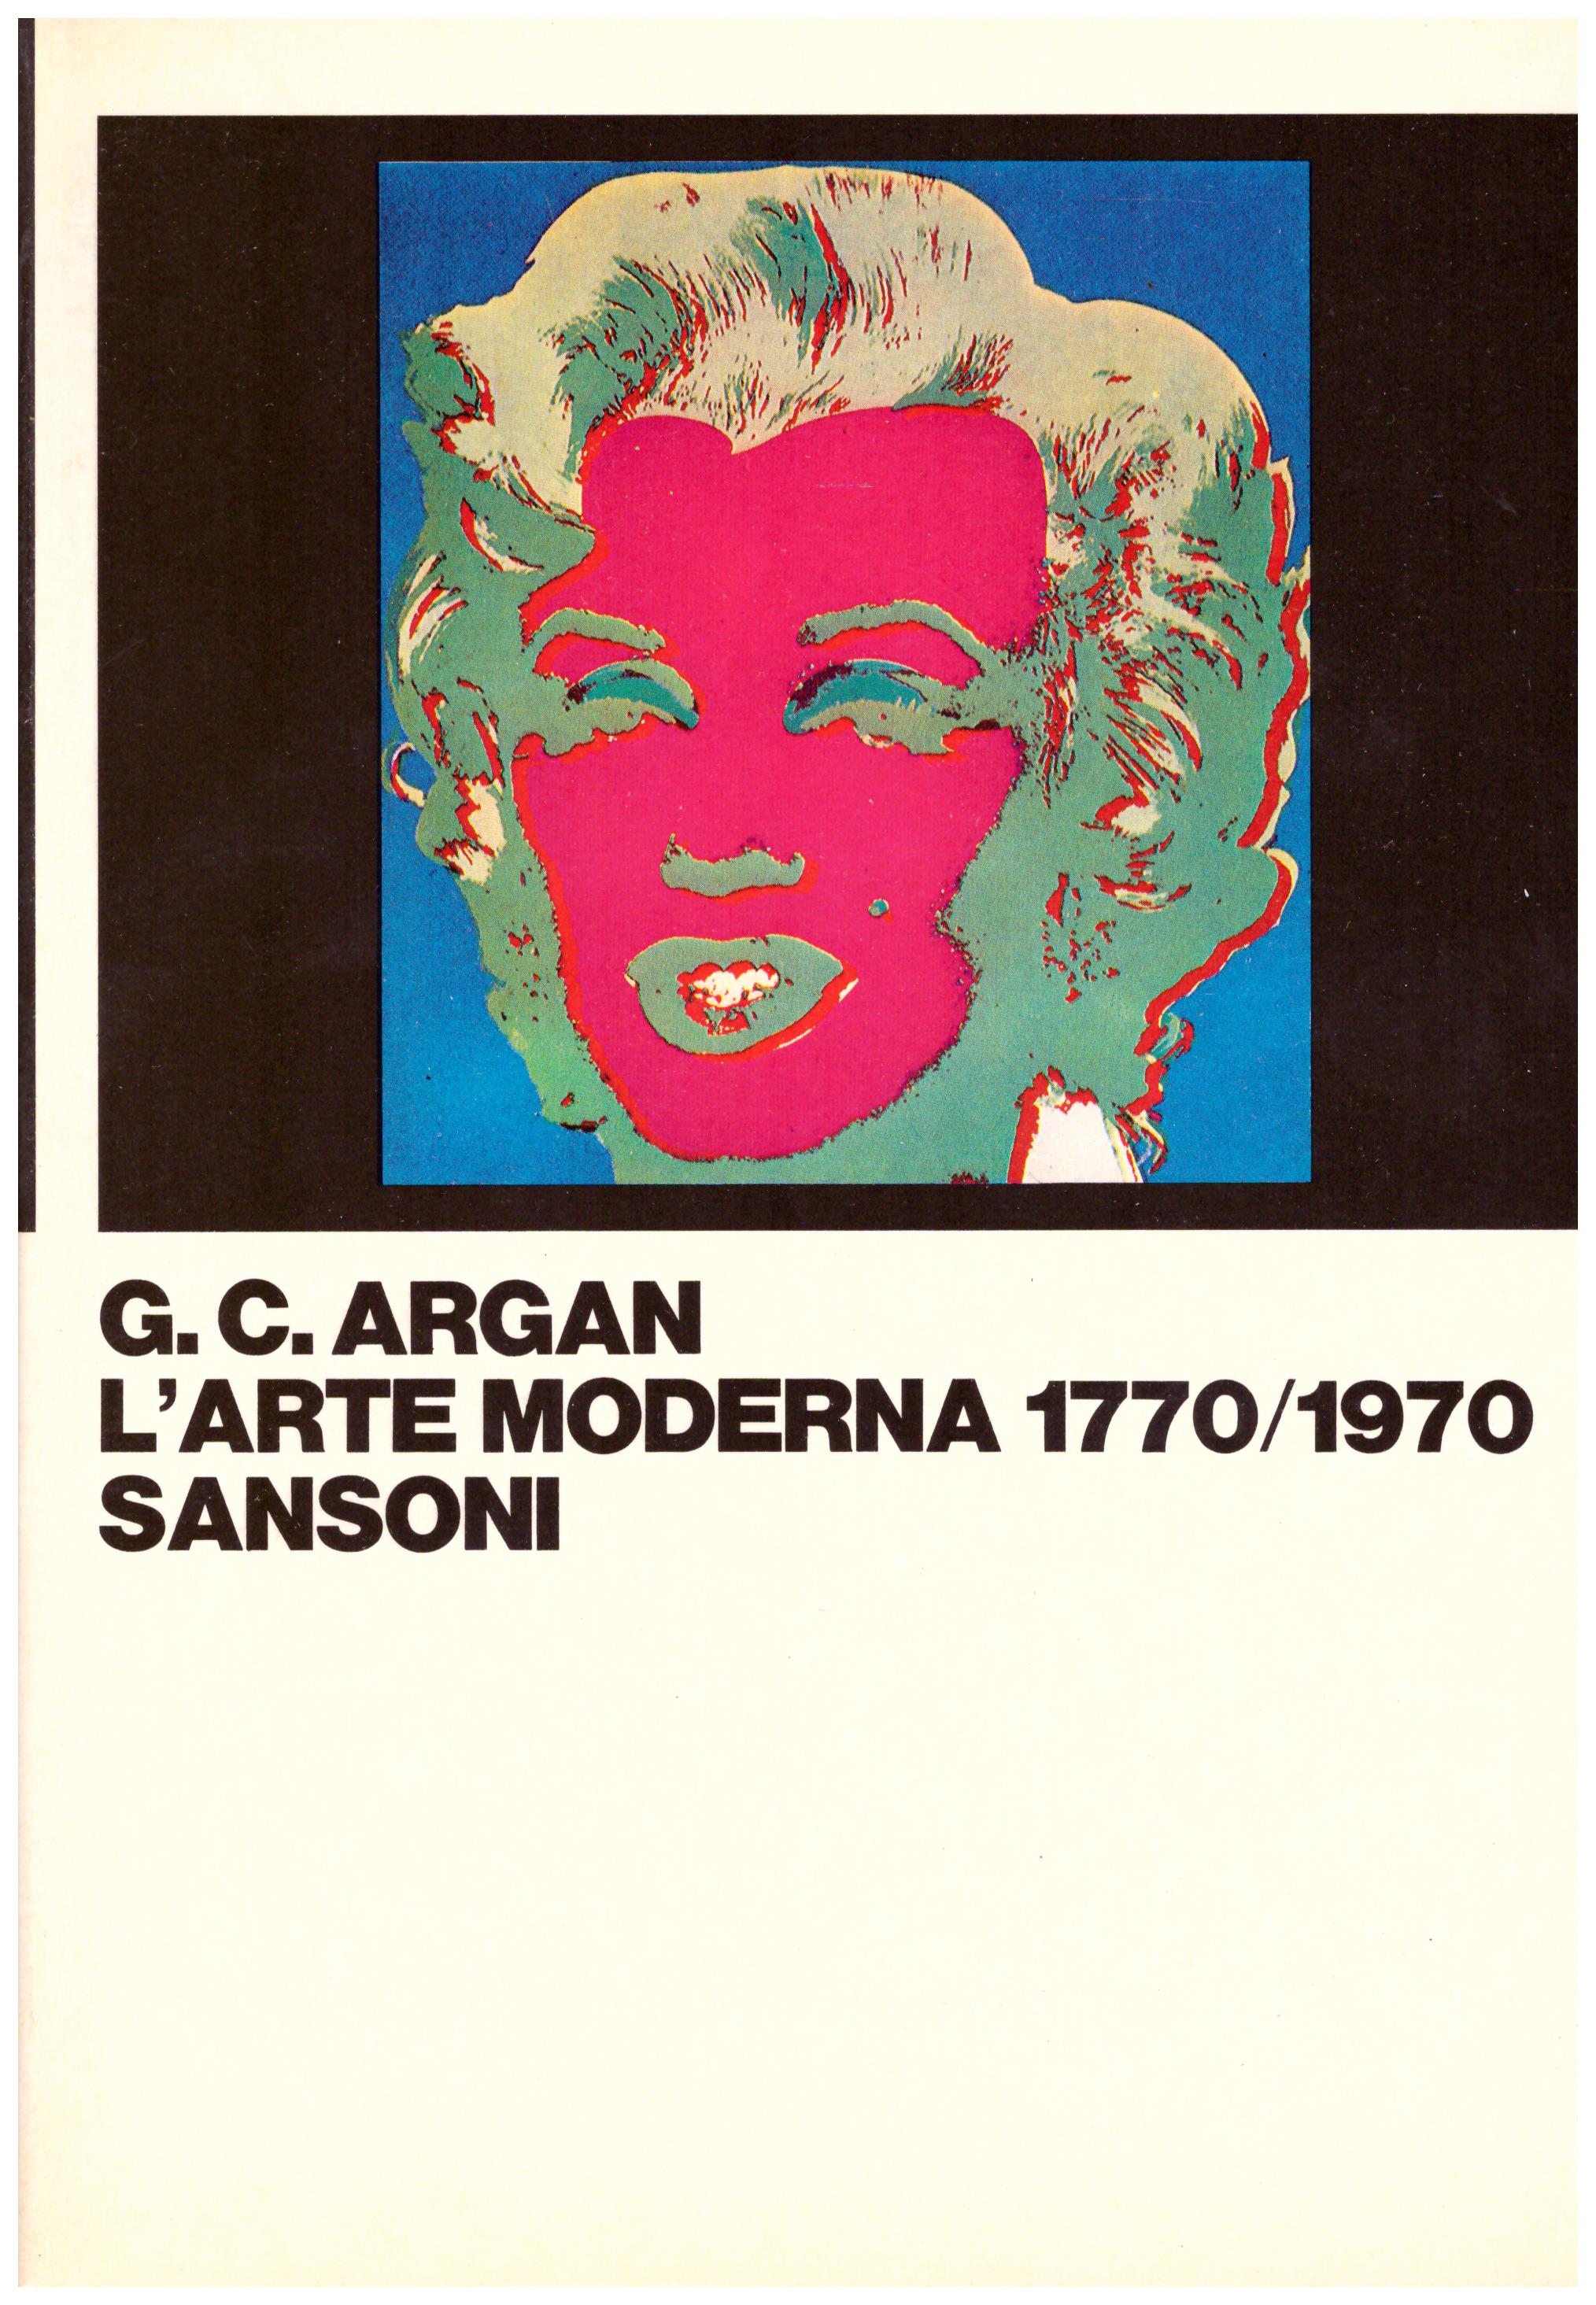 Titolo: L'arte moderna 1770-1970  Autore: G. C. Argan  Editore: Sansoni, 1982